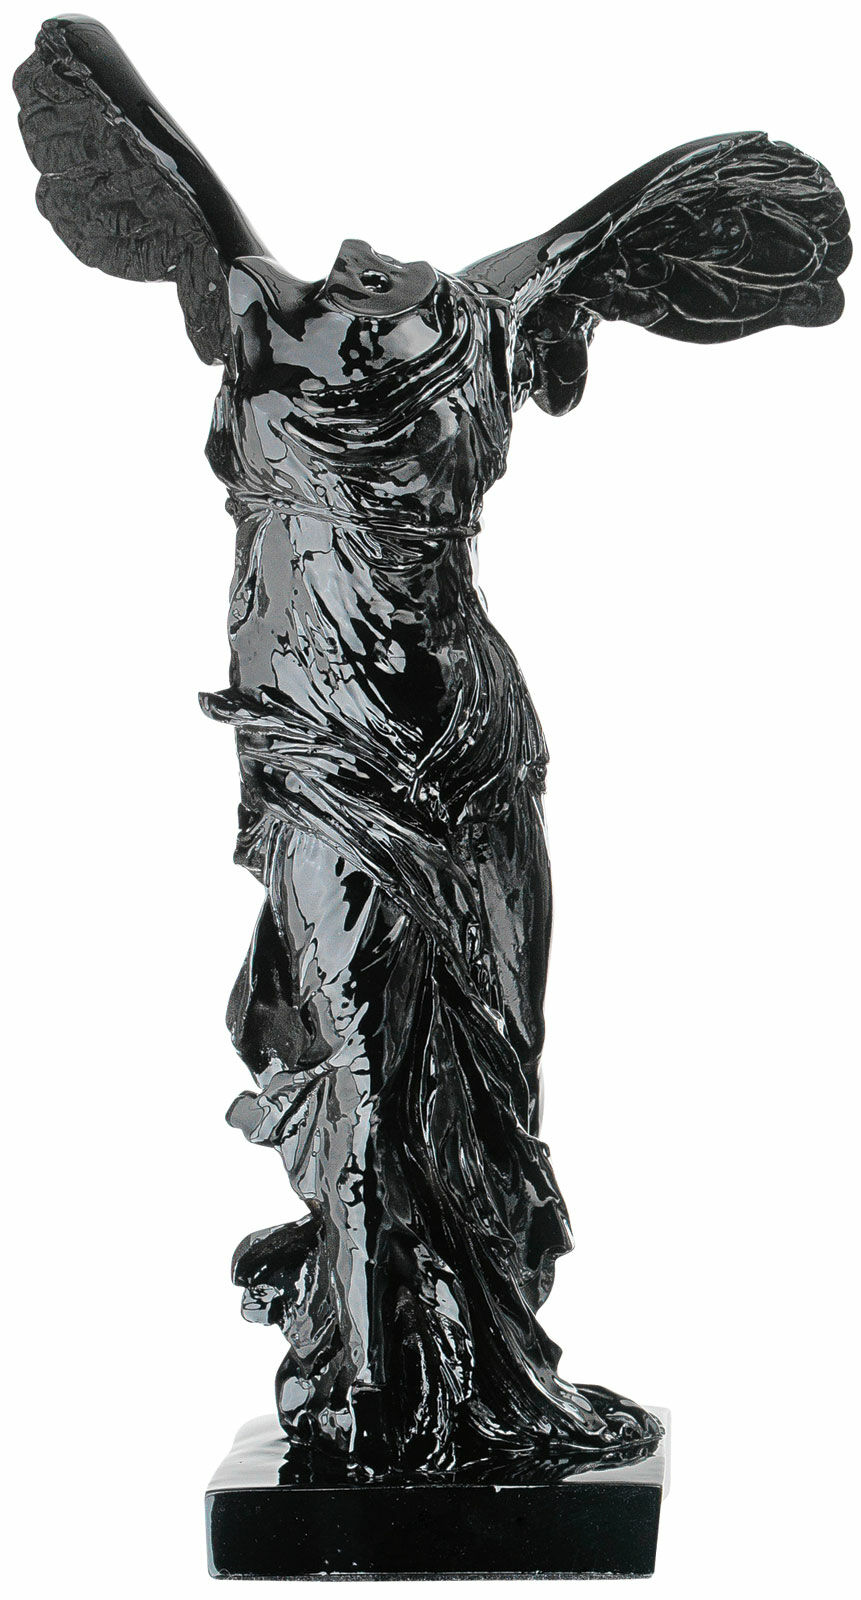 Skulptur "Nike af Samothrake", sort støbning